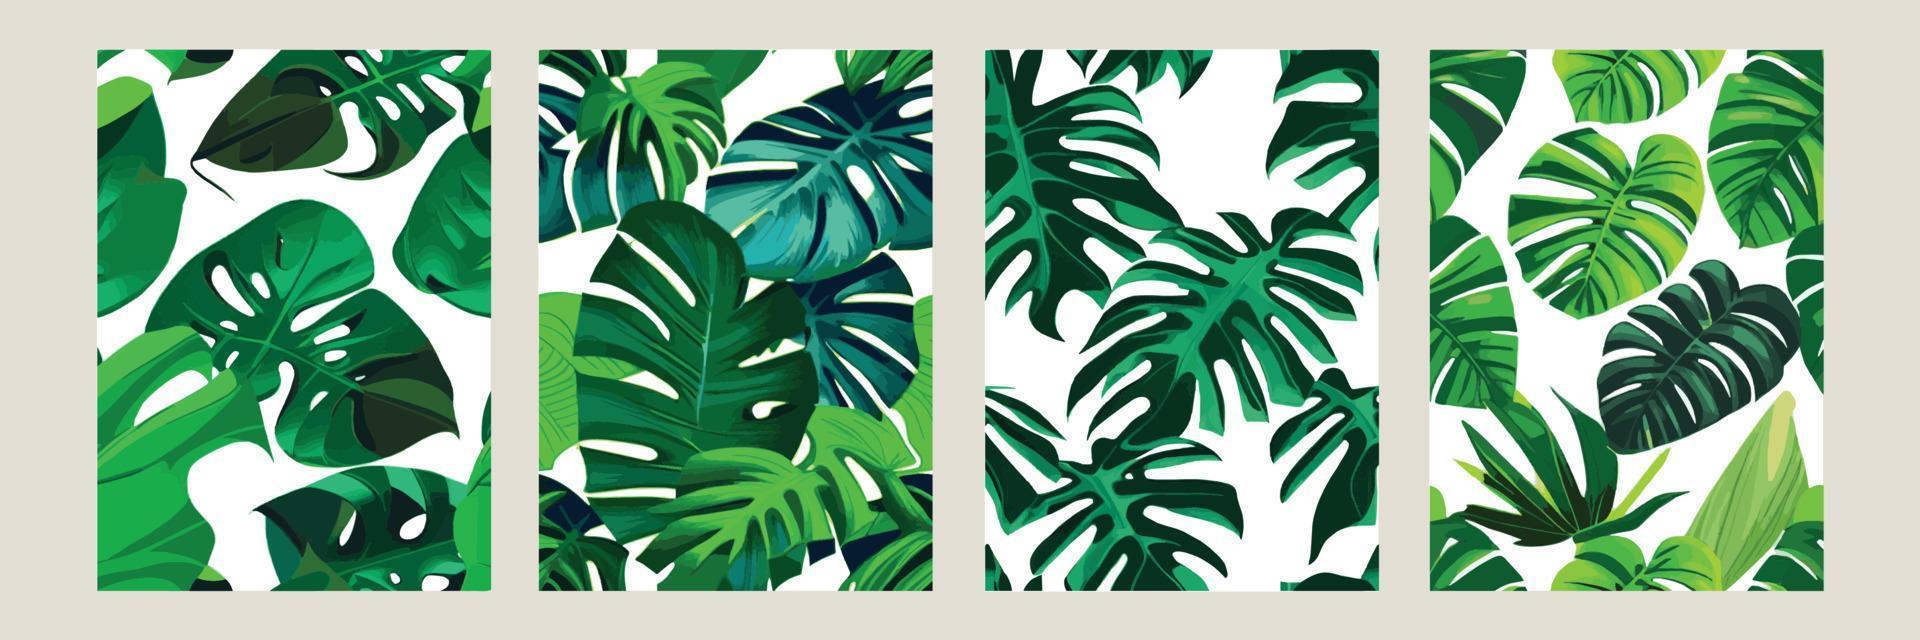 grön monstera som en mönster på en vit bakgrund. exotisk mönster med tropisk löv. vektor illustration. uppsättning av fyrkant posters